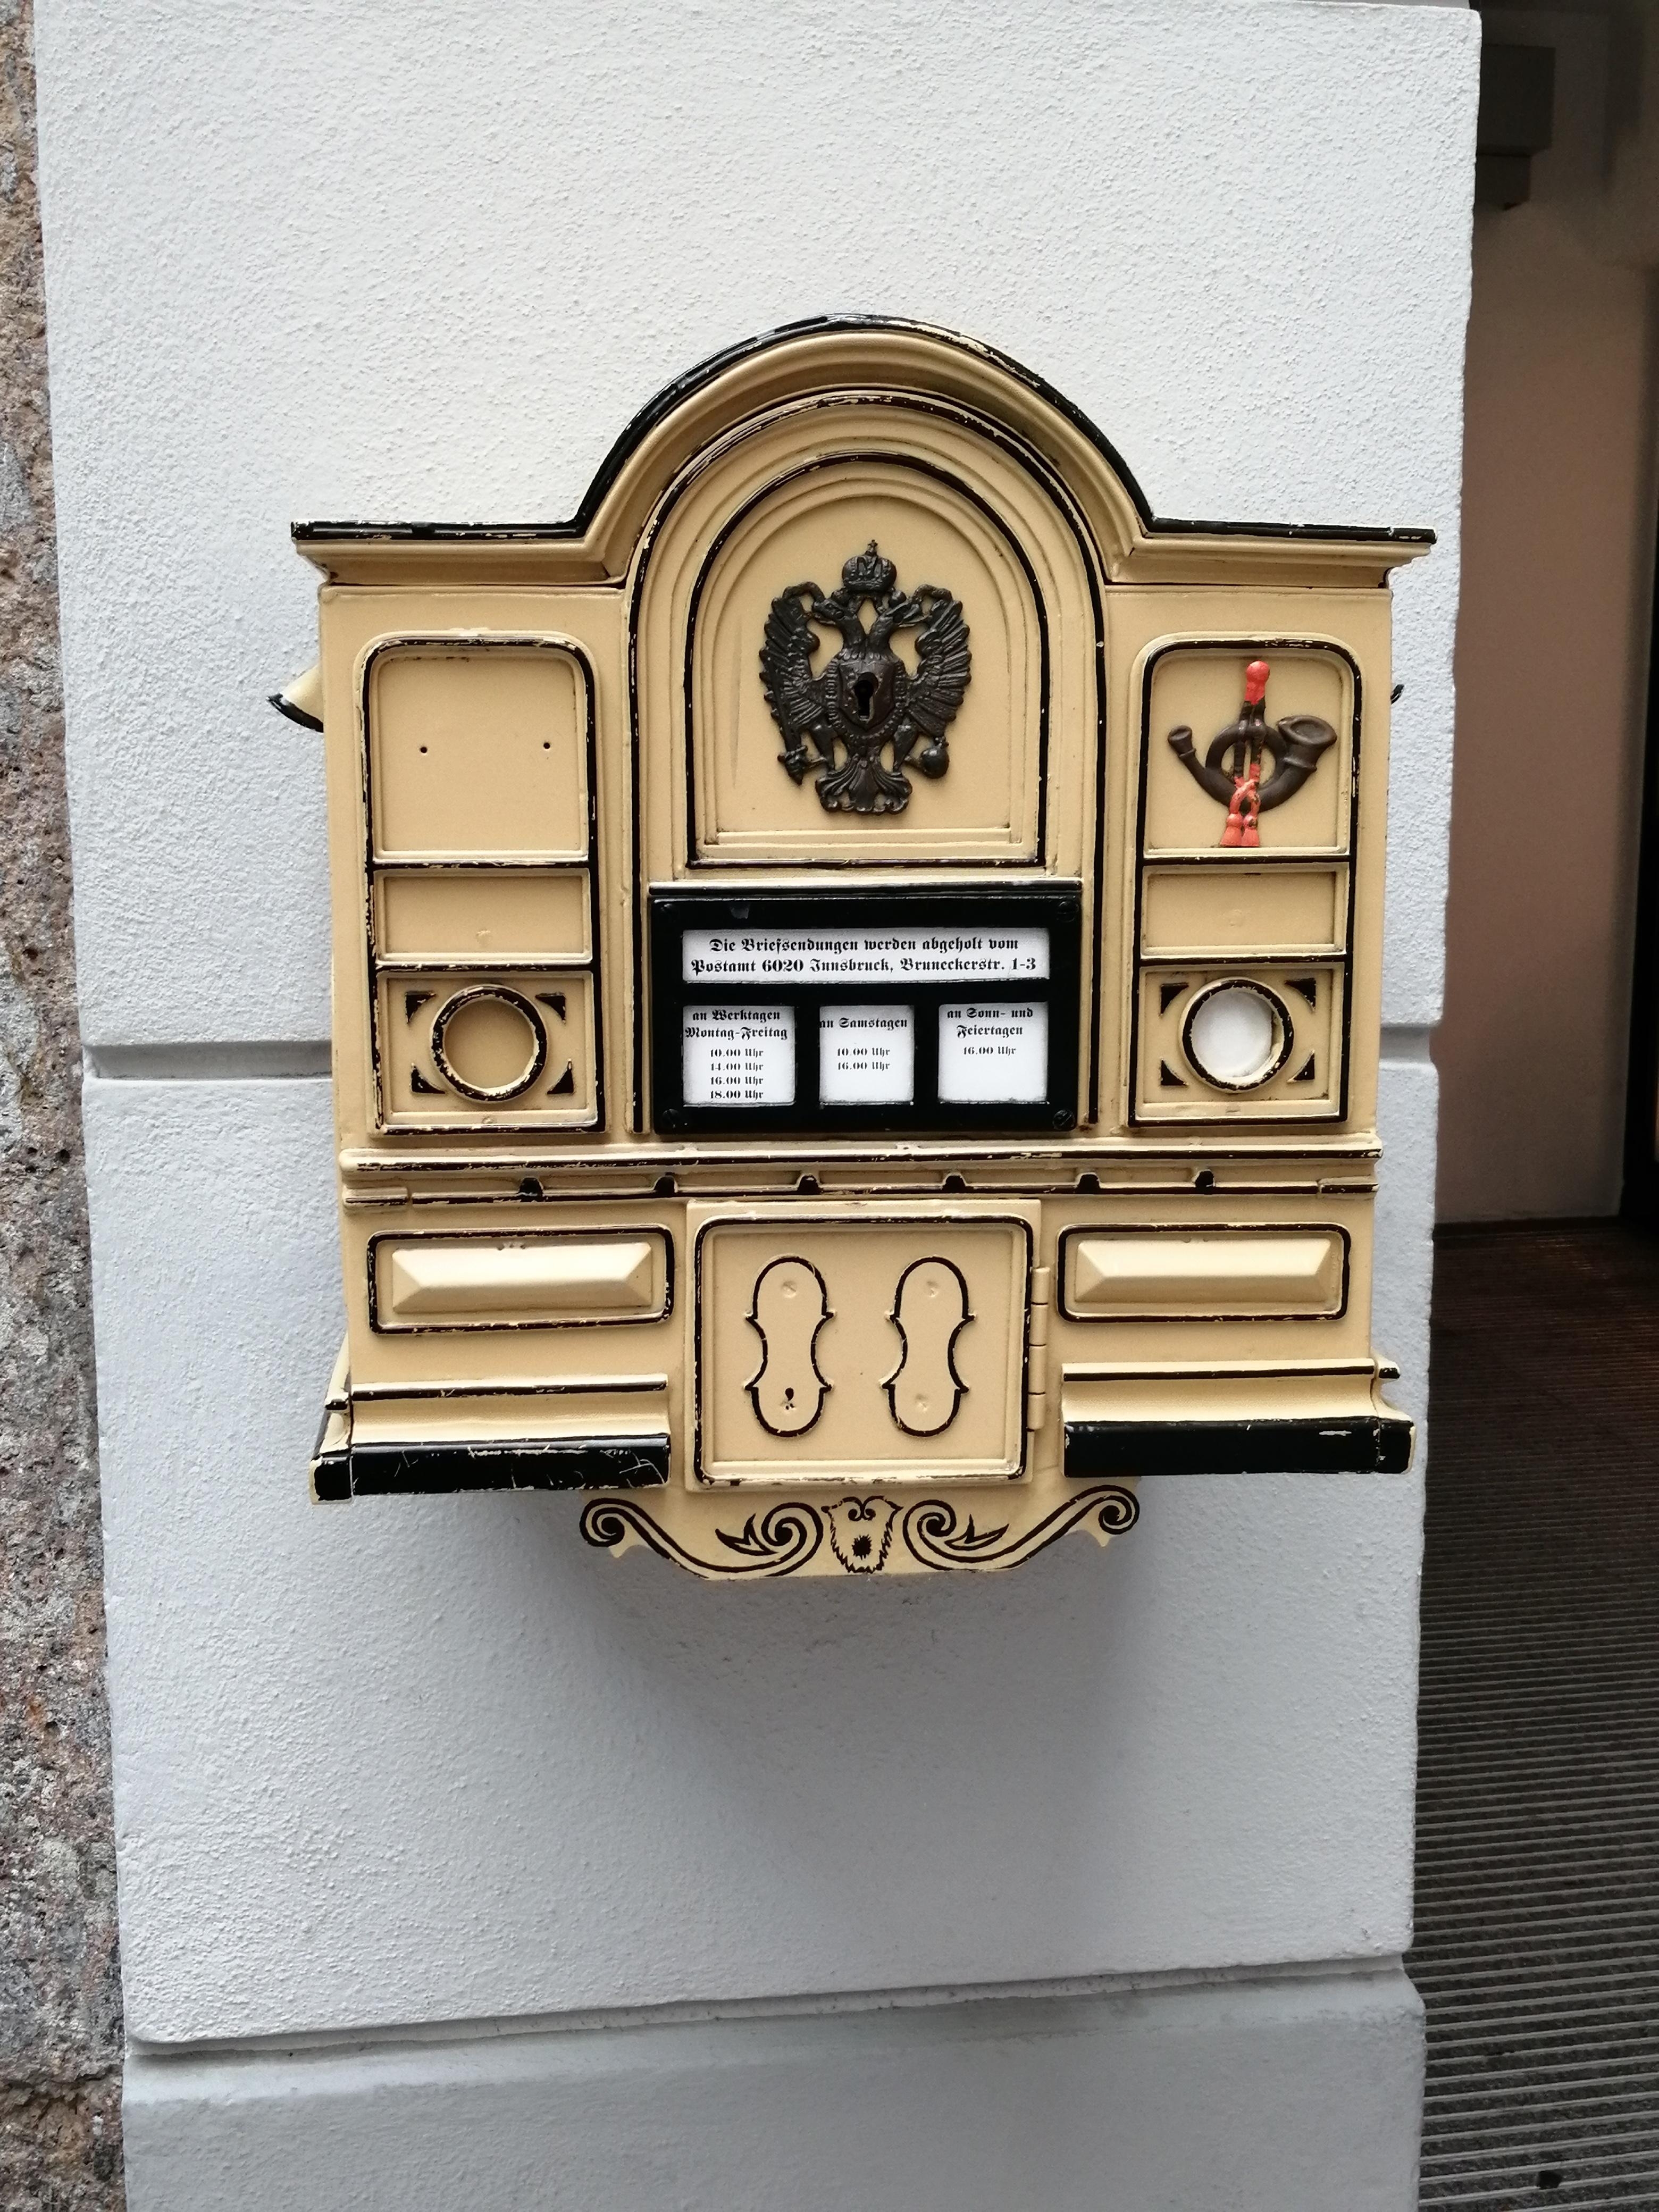 Ein toller Briefkasten in Innsbruck!
Ein Unikat:)